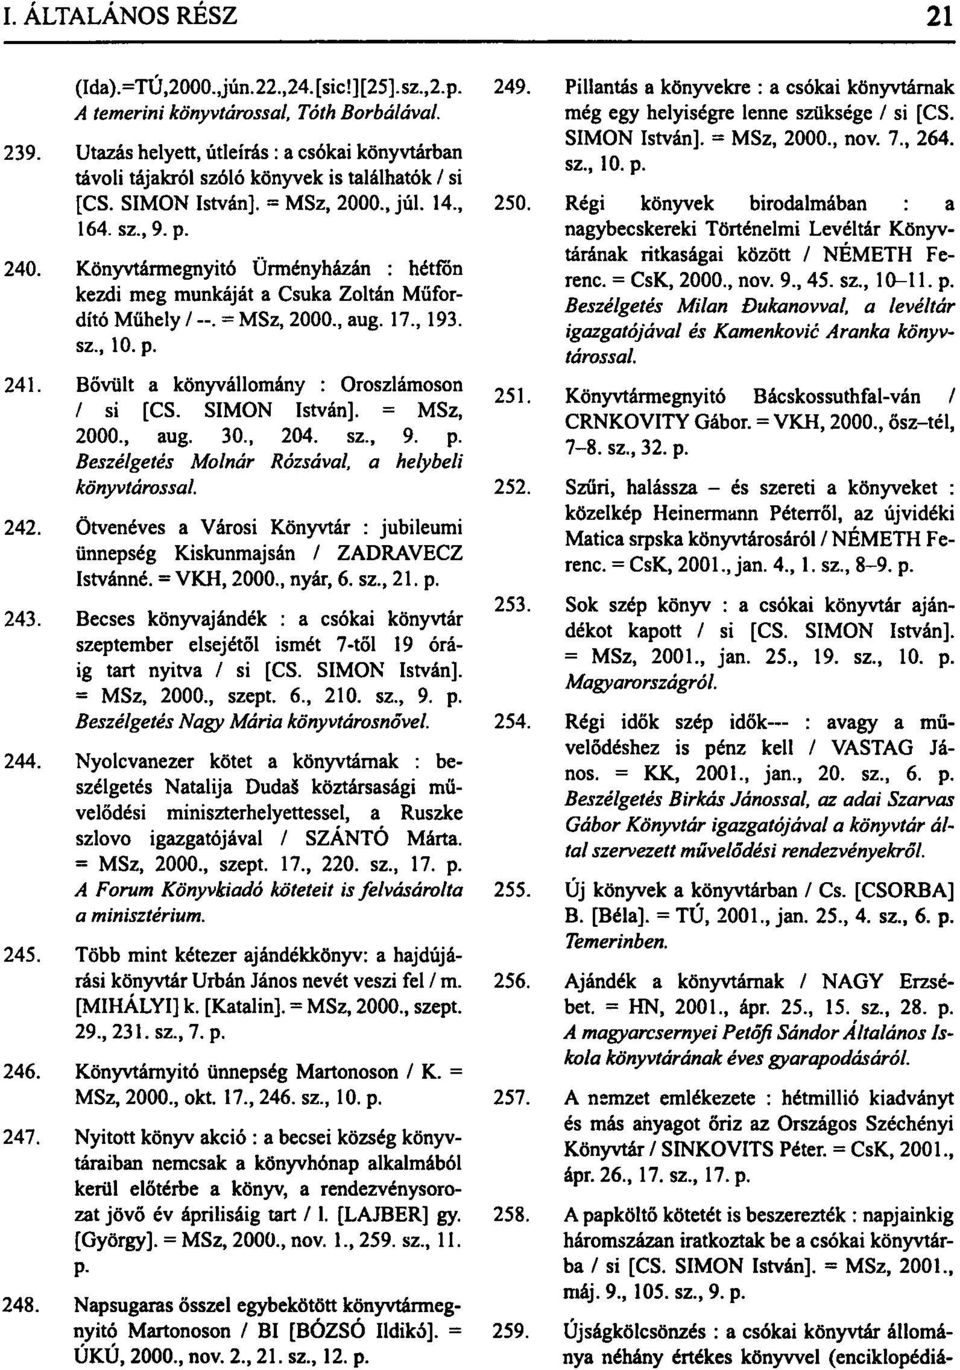 Könyvtármegnyitó Ürményházán : hétfőn kezdi meg munkáját a Csuka Zoltán Műfordító Műhely / --. = MSz, 2000., aug. 17., 193. sz., 10. p. 241. Bővült a könyvállomány : Oroszlámoson / si [CS.